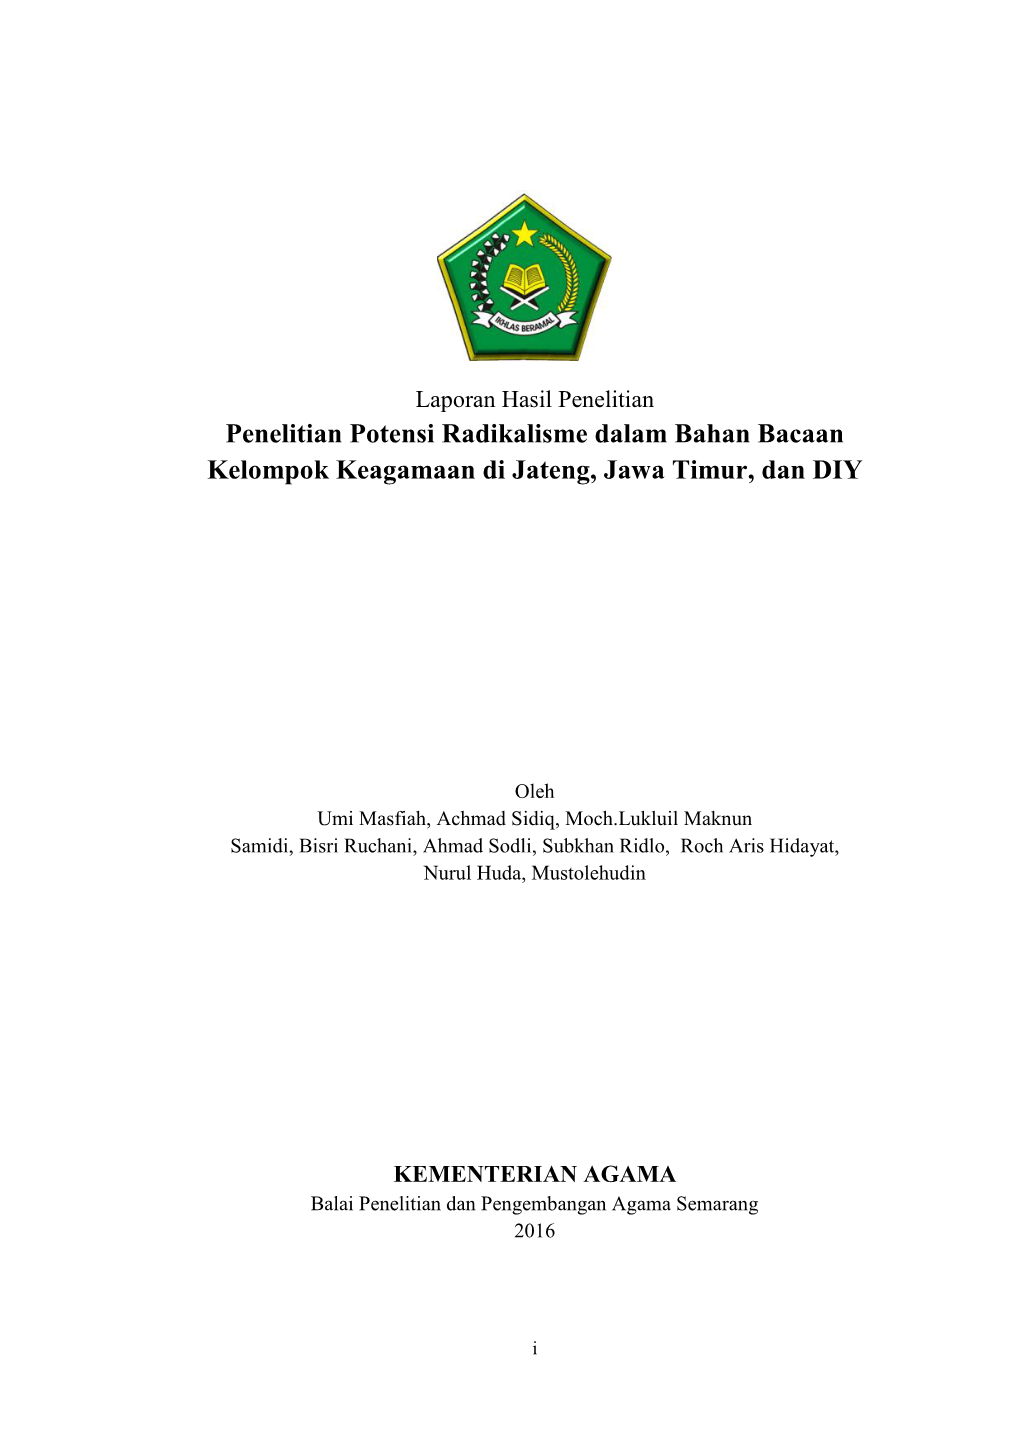 Penelitian Potensi Radikalisme Dalam Bahan Bacaan Kelompok Keagamaan Di Jateng, Jawa Timur, Dan DIY